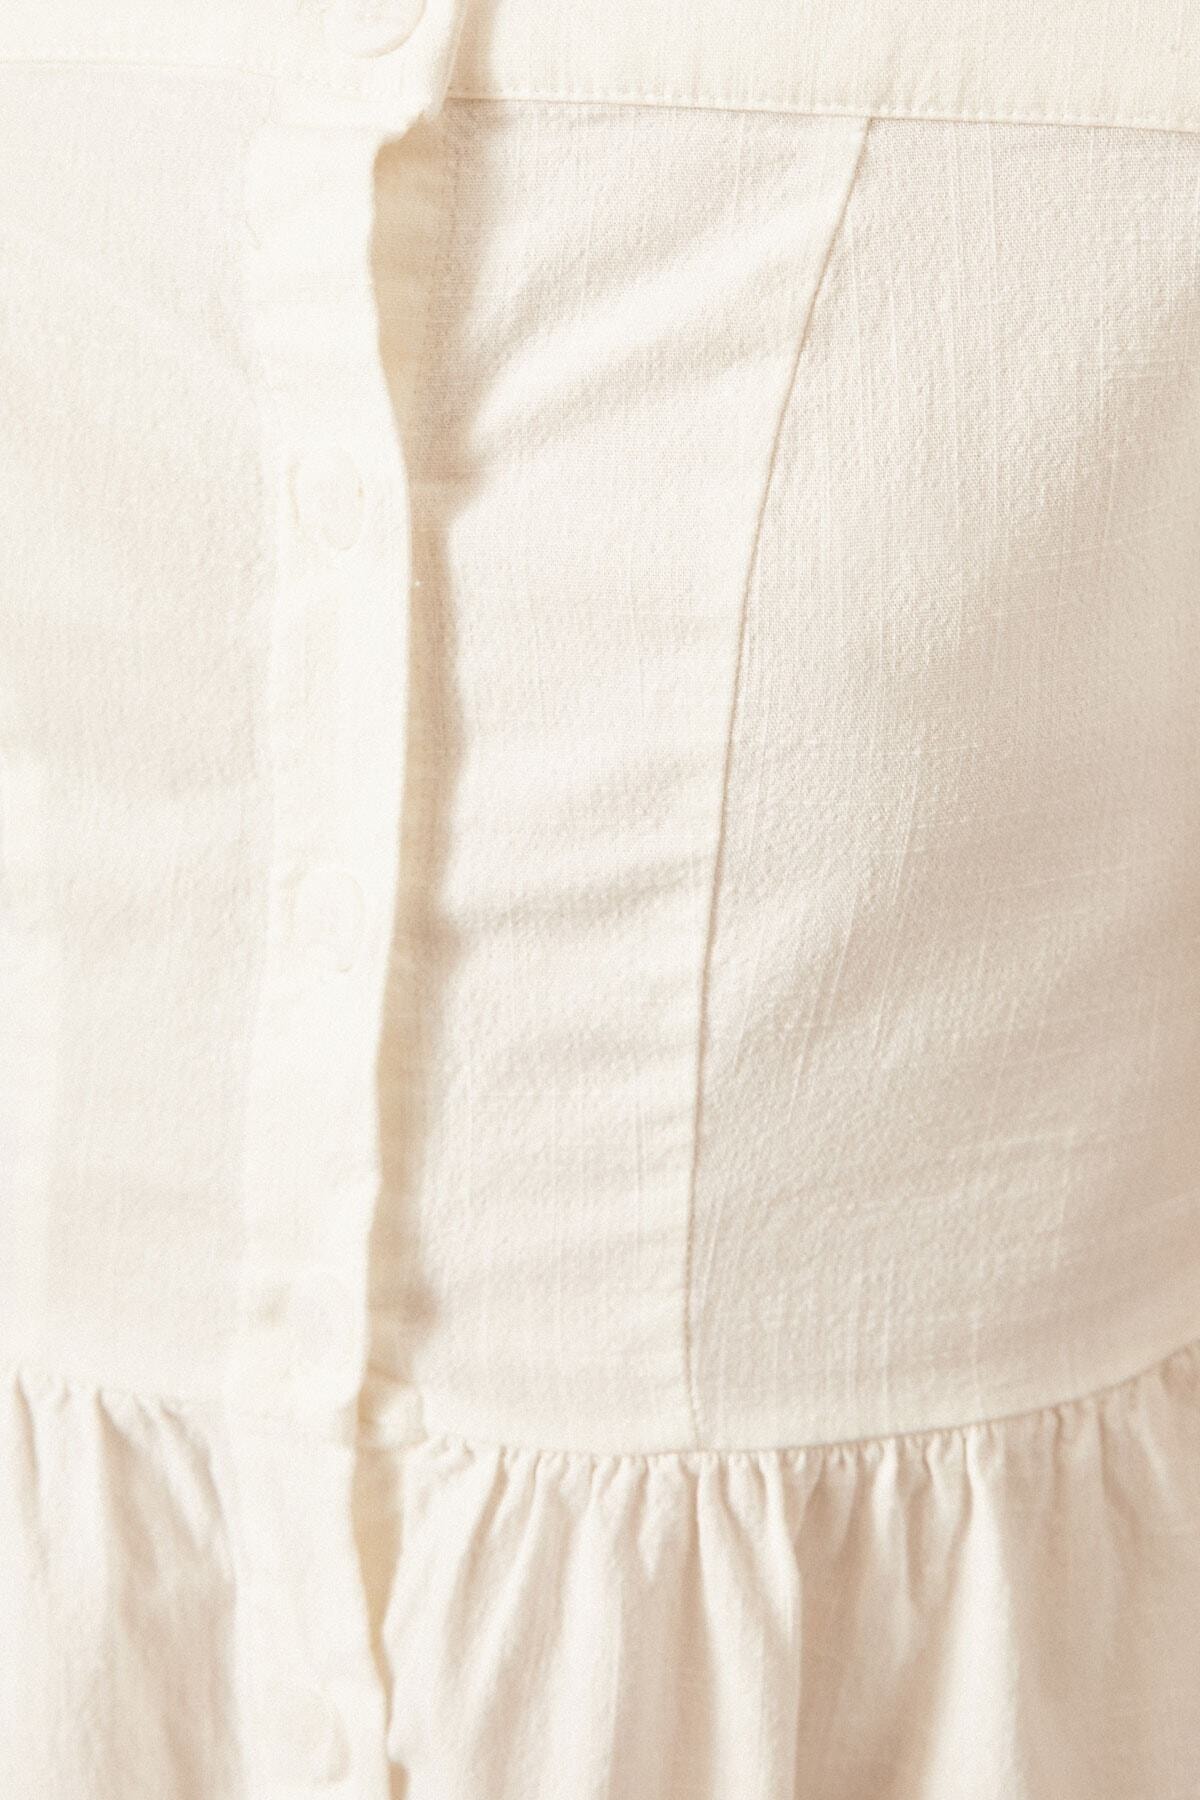 Koton Kleid Weiß A-Linie Fast ausverkauft ER7995